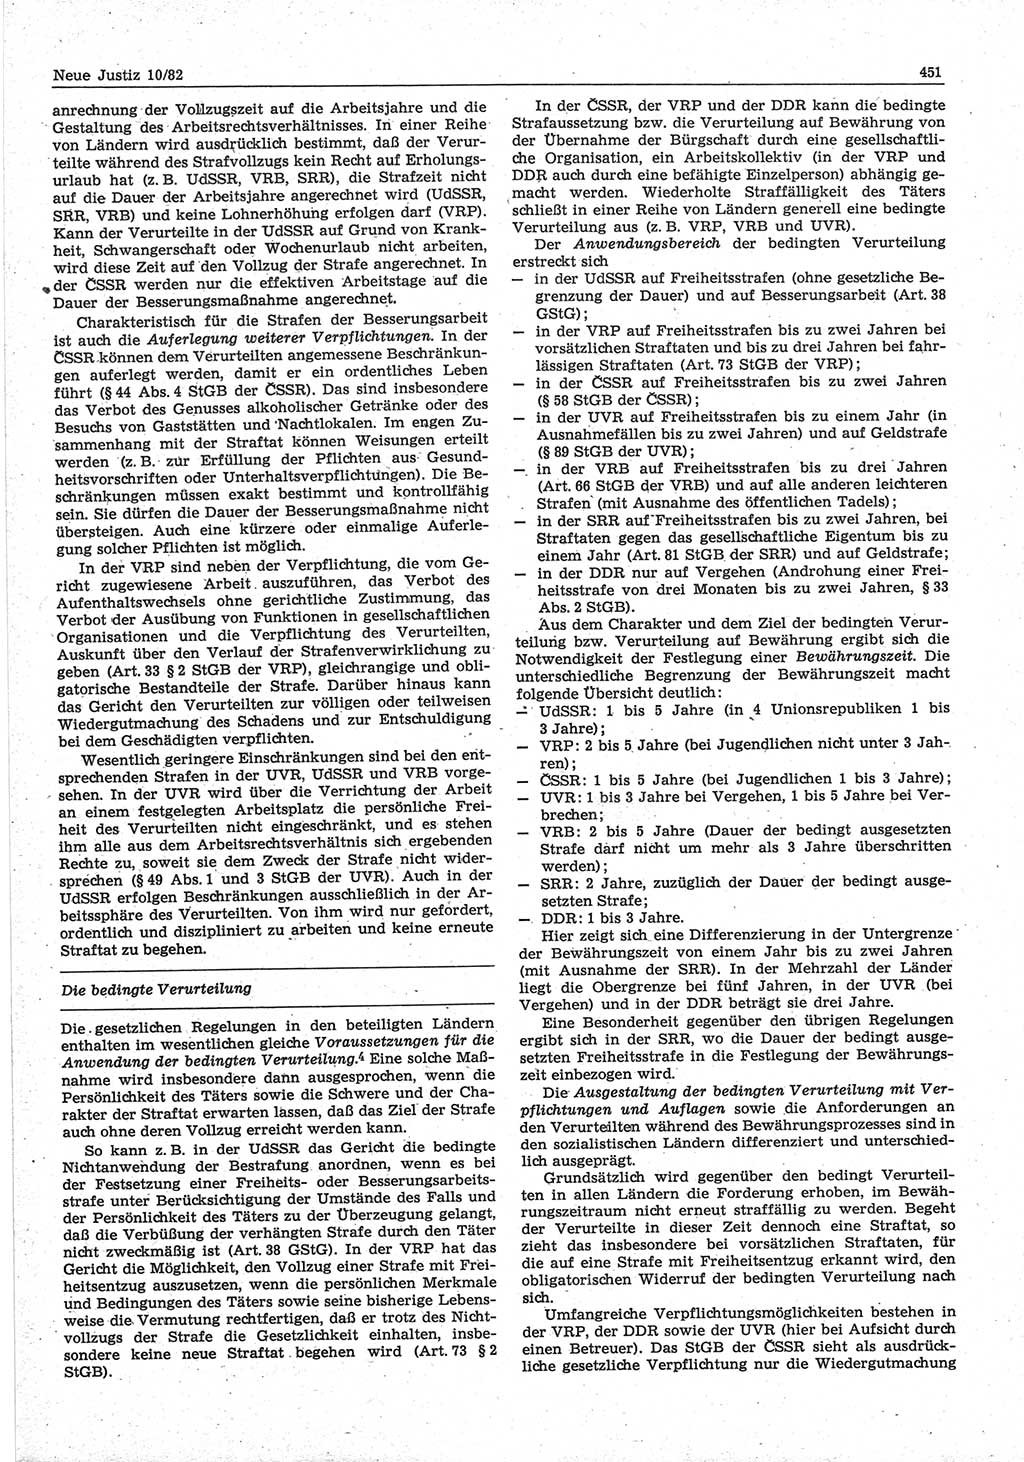 Neue Justiz (NJ), Zeitschrift für sozialistisches Recht und Gesetzlichkeit [Deutsche Demokratische Republik (DDR)], 36. Jahrgang 1982, Seite 451 (NJ DDR 1982, S. 451)